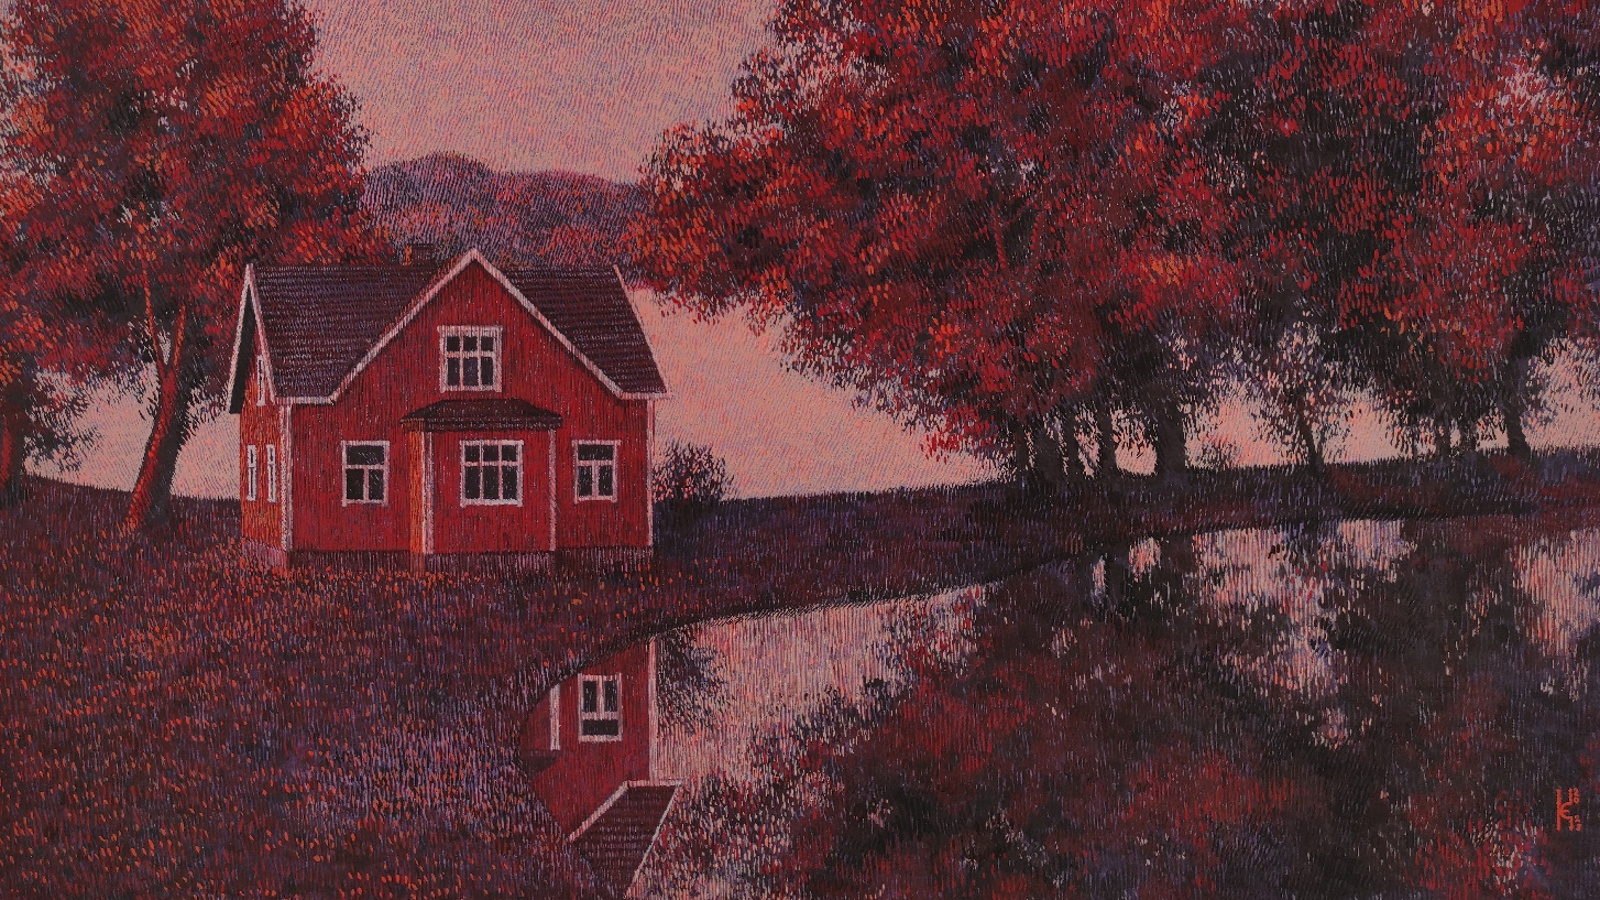 Kuvassa on Kateryna Yehorovan maalaus, jossa on punainen talo kahden veden välissä ja se heijastuu edessä olevaan veteen toisesta kulmastaan.  Molemmilla puolilla on ruskehtavat lehtipuut.  